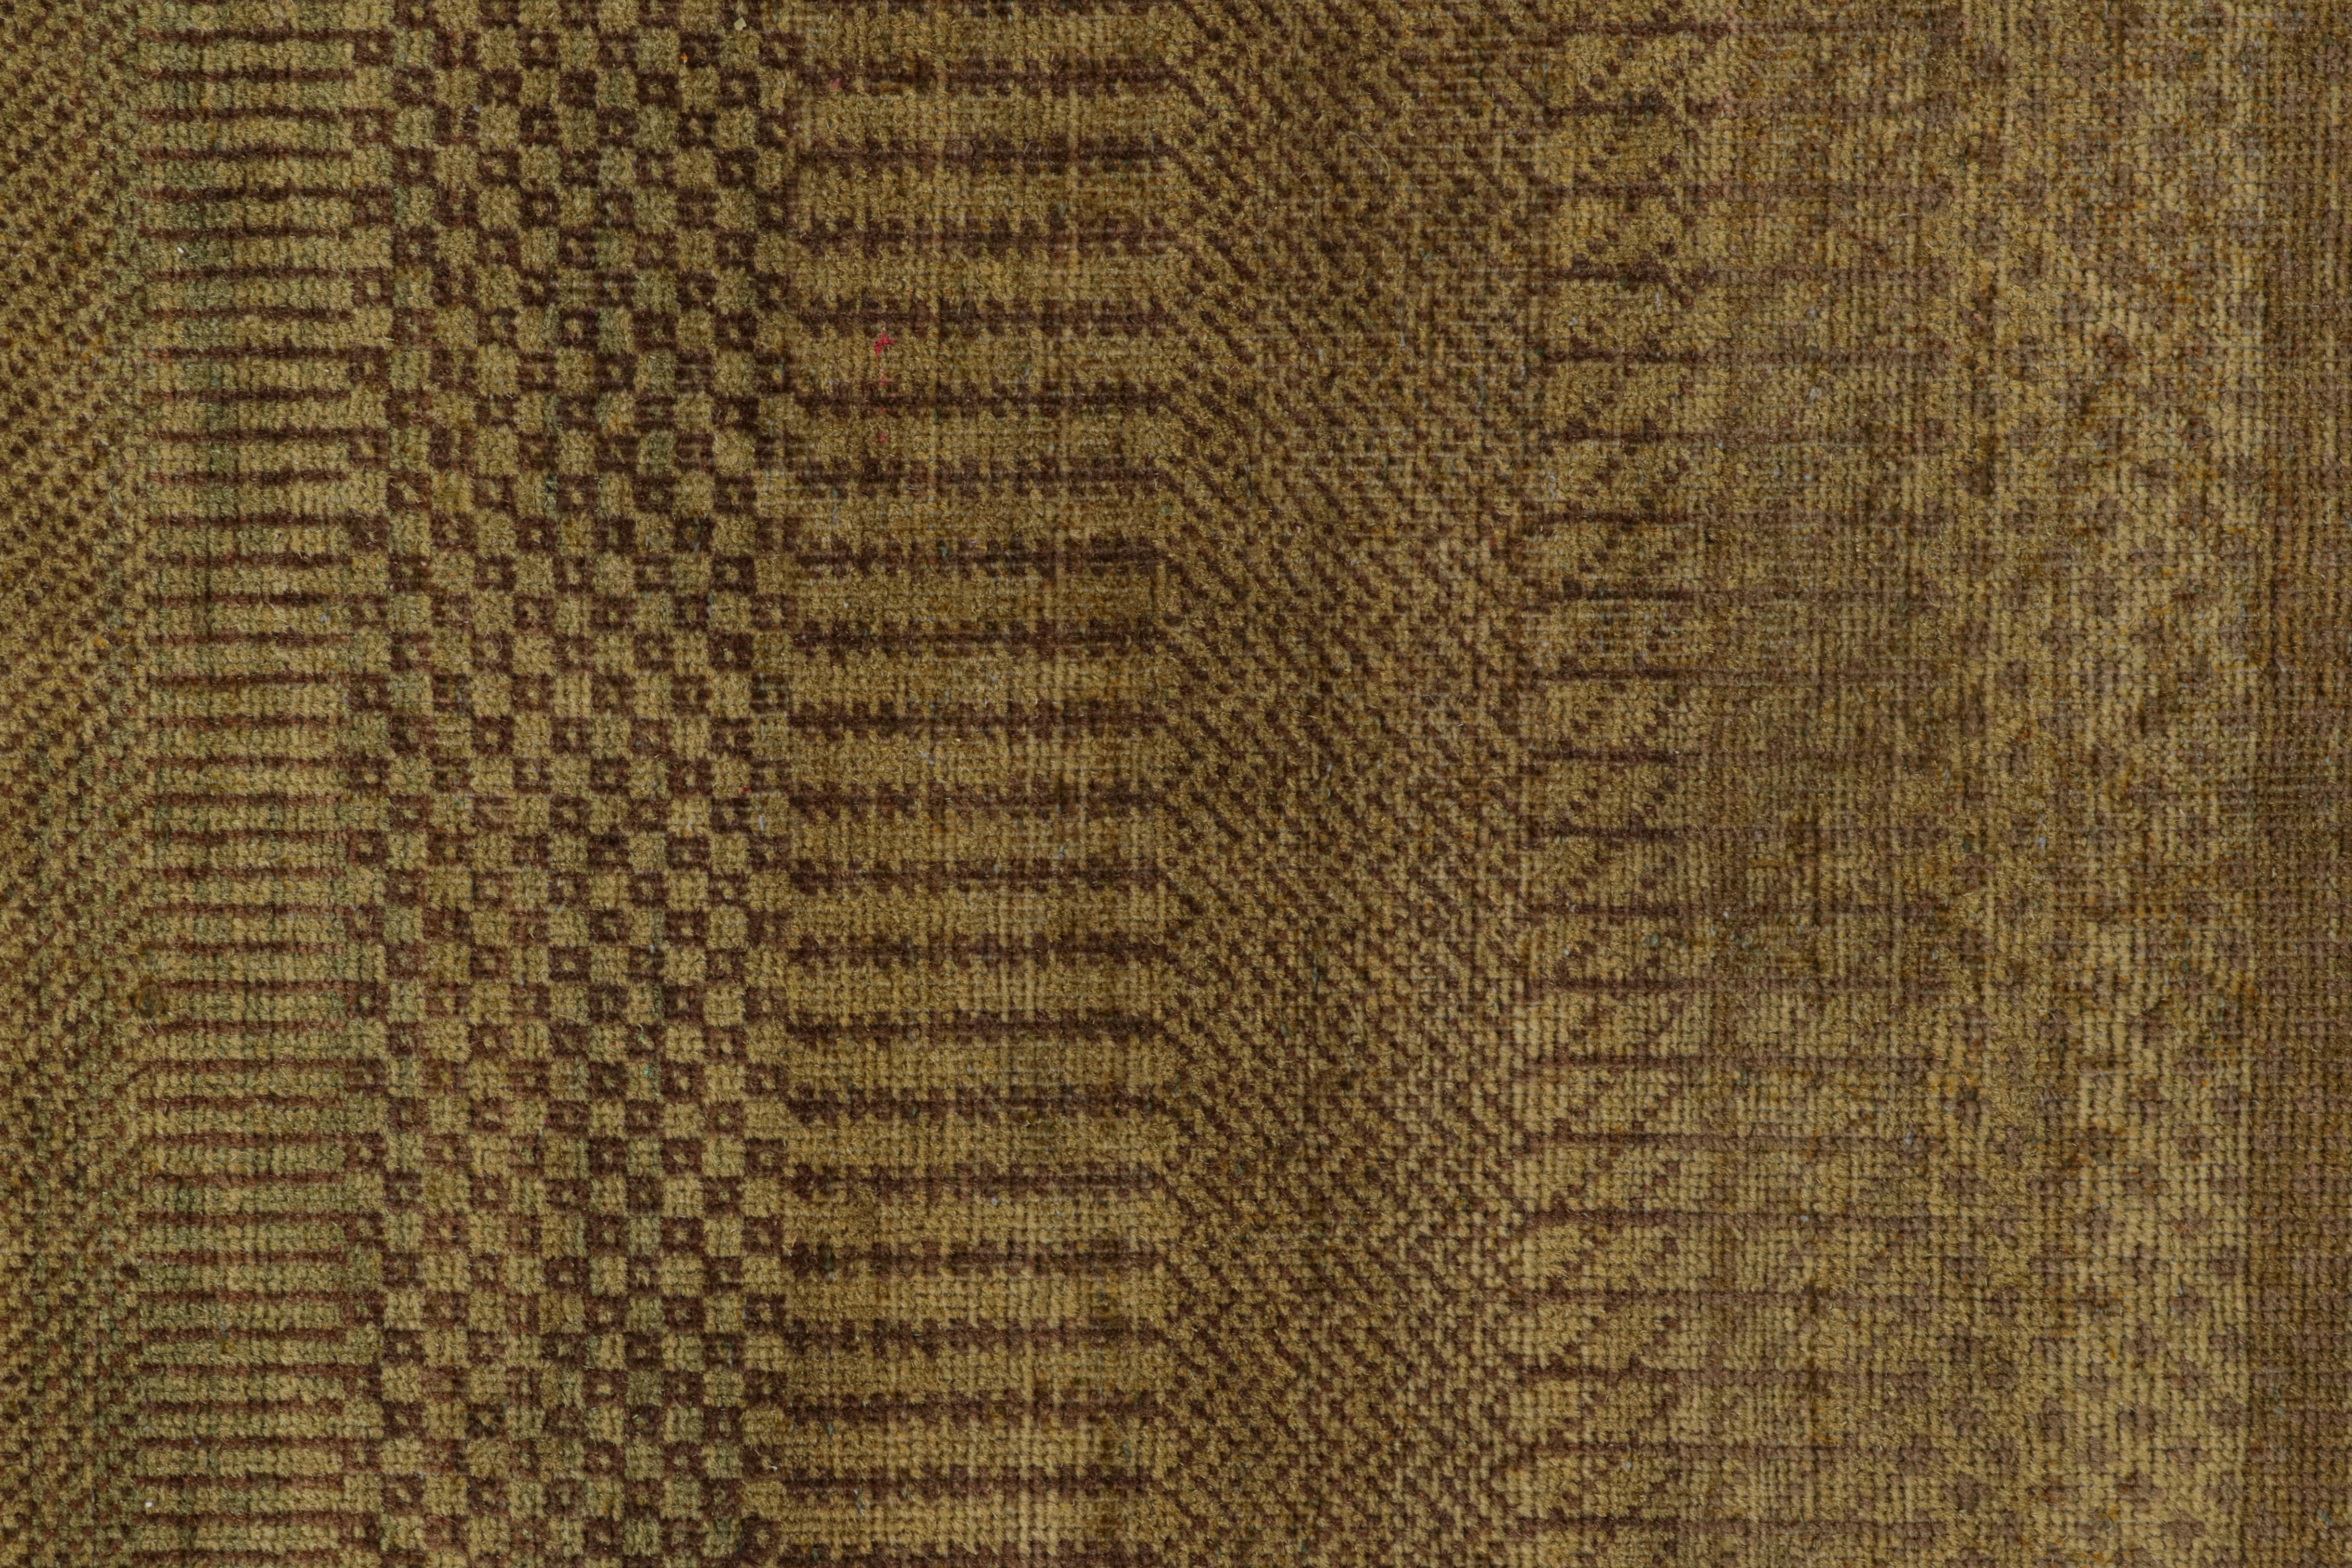 Rug & Kilim's Modern Textural Rug in Green, Brown and Gold Stripes and Striae (Tapis à rayures et à bandes vertes, brunes et dorées)